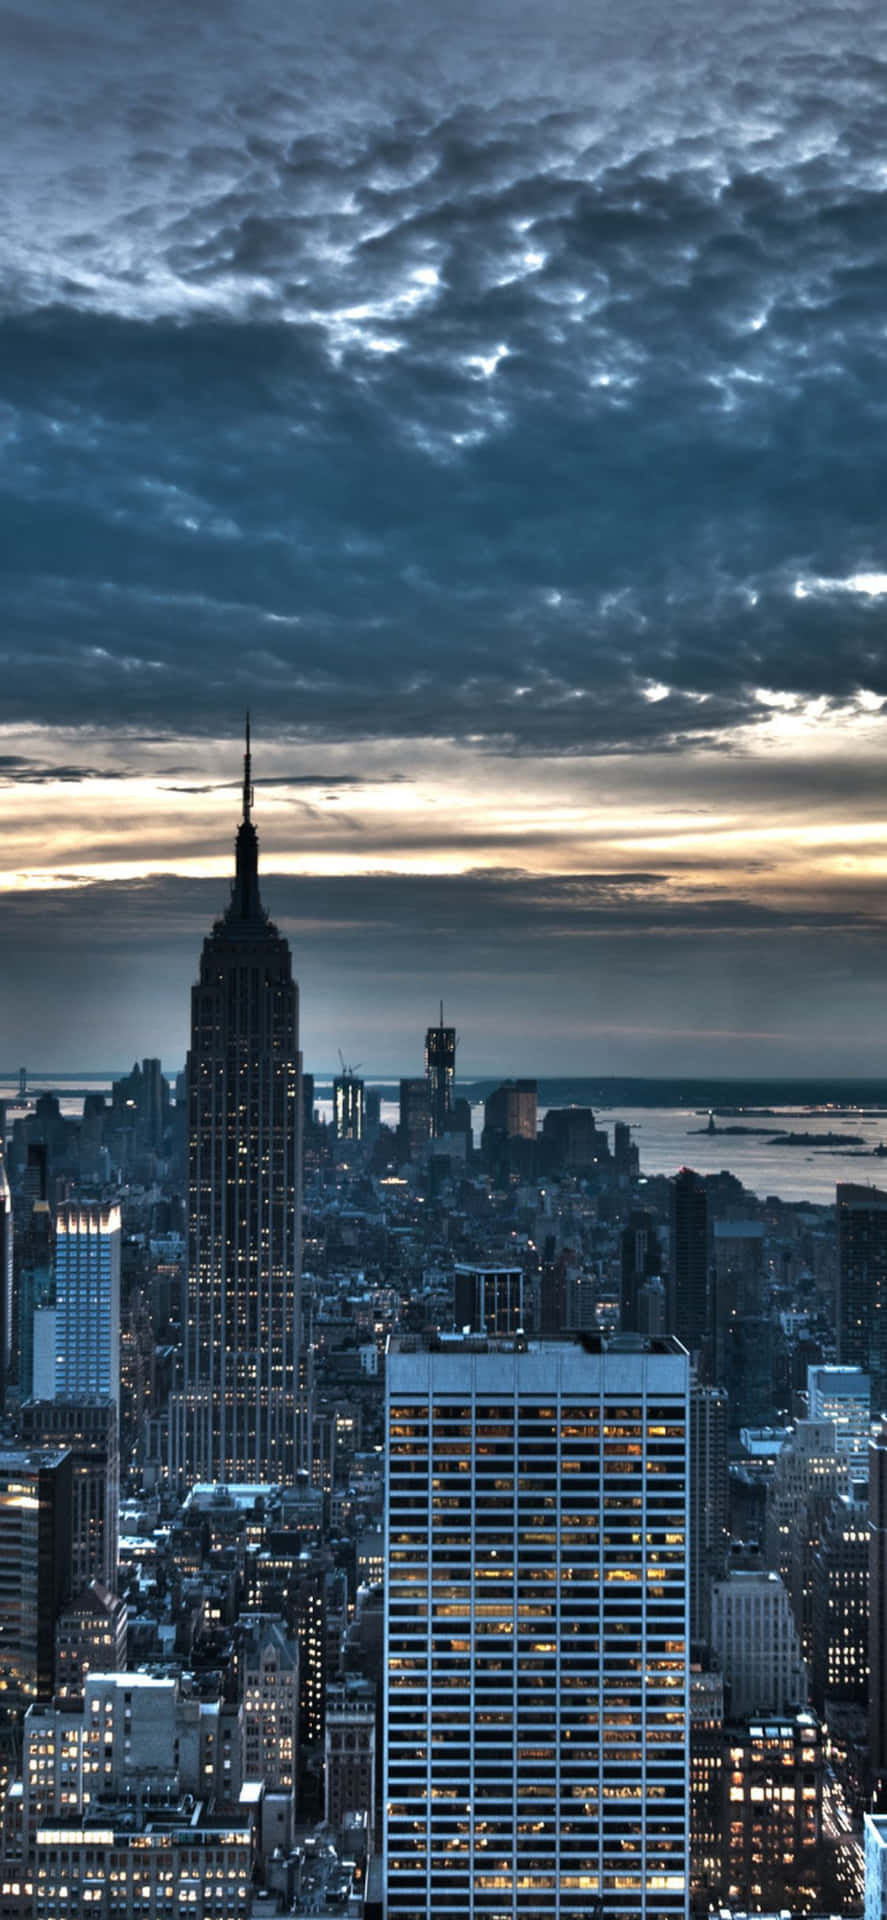 Cenárionoturno Magnífico E Majestoso Da Cidade De Nova York Em Um Iphone Xs.